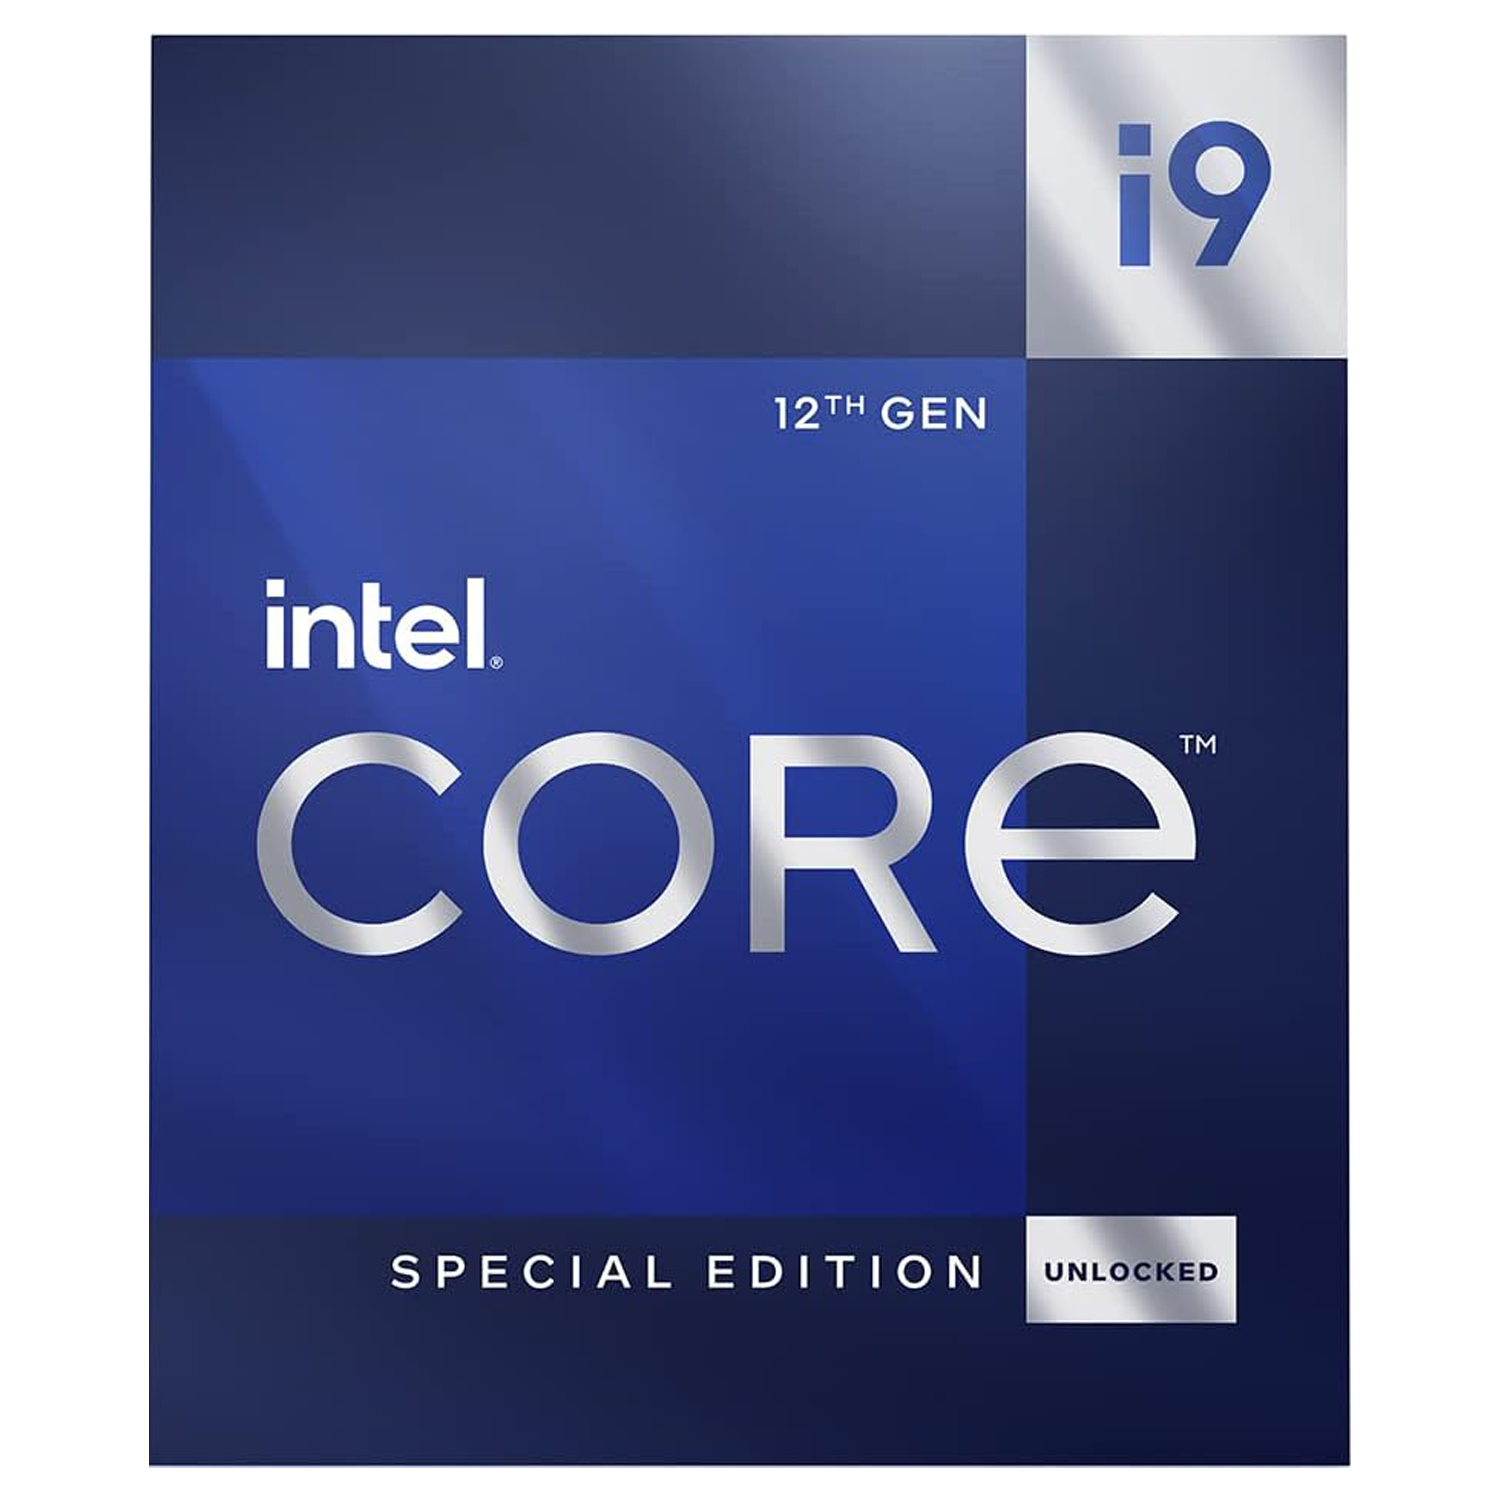 12th Gen Intel Core i9-12900KS Desktop Processor (main)